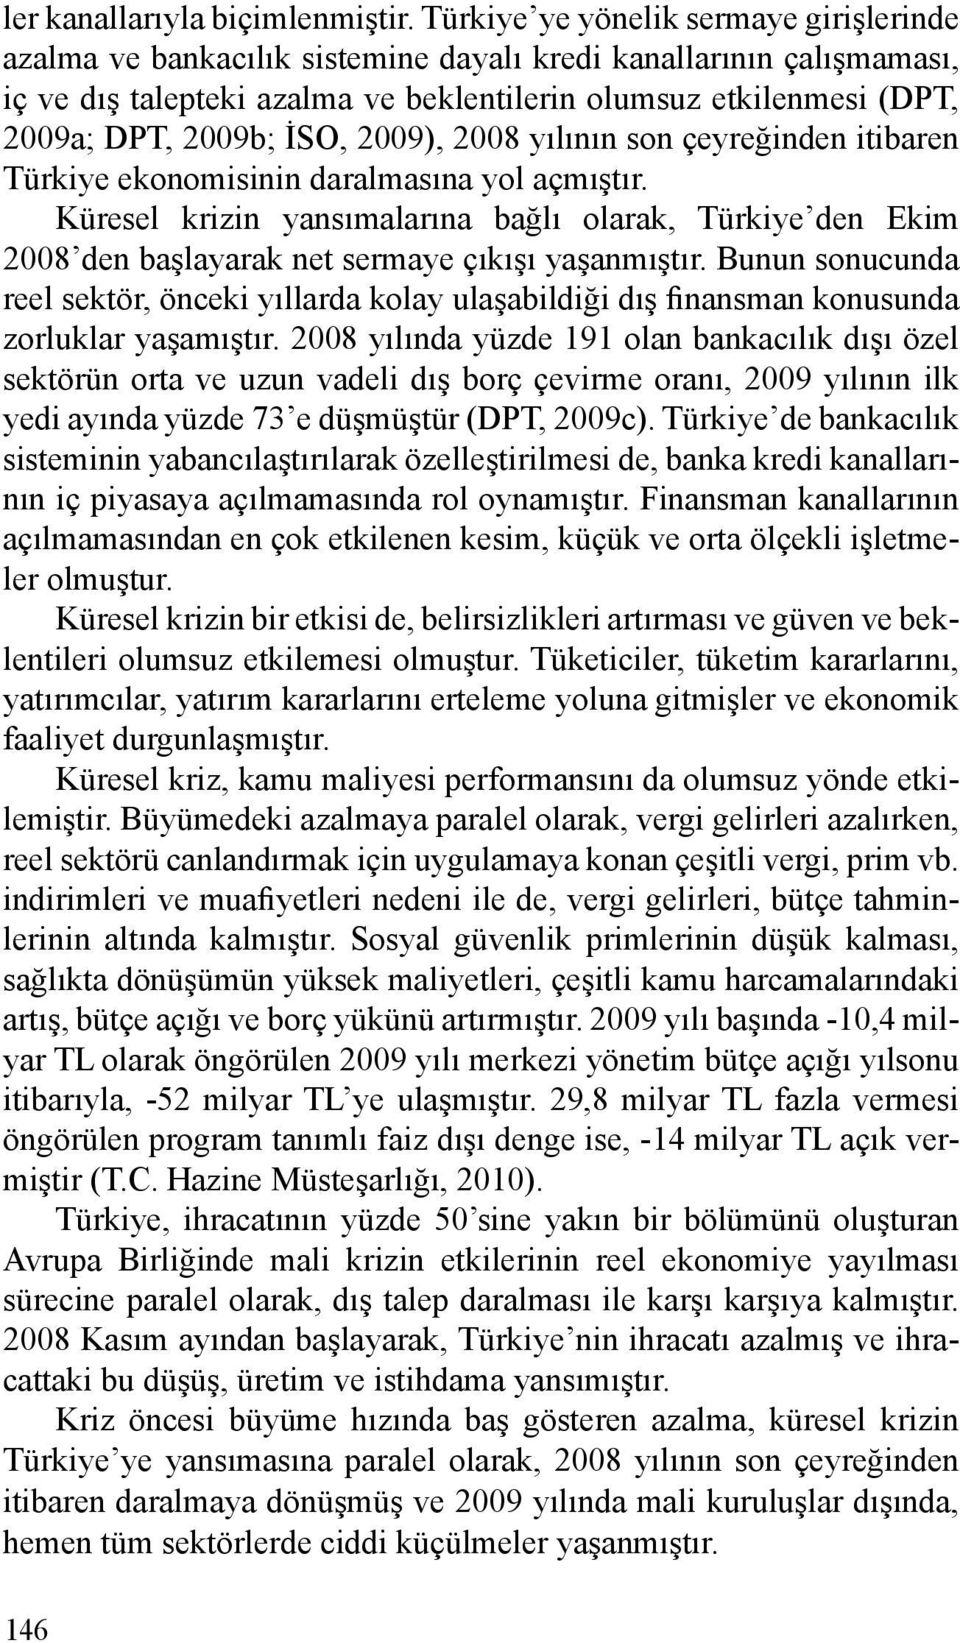 İSO, 2009), 2008 yılının son çeyreğinden itibaren Türkiye ekonomisinin daralmasına yol açmıştır.